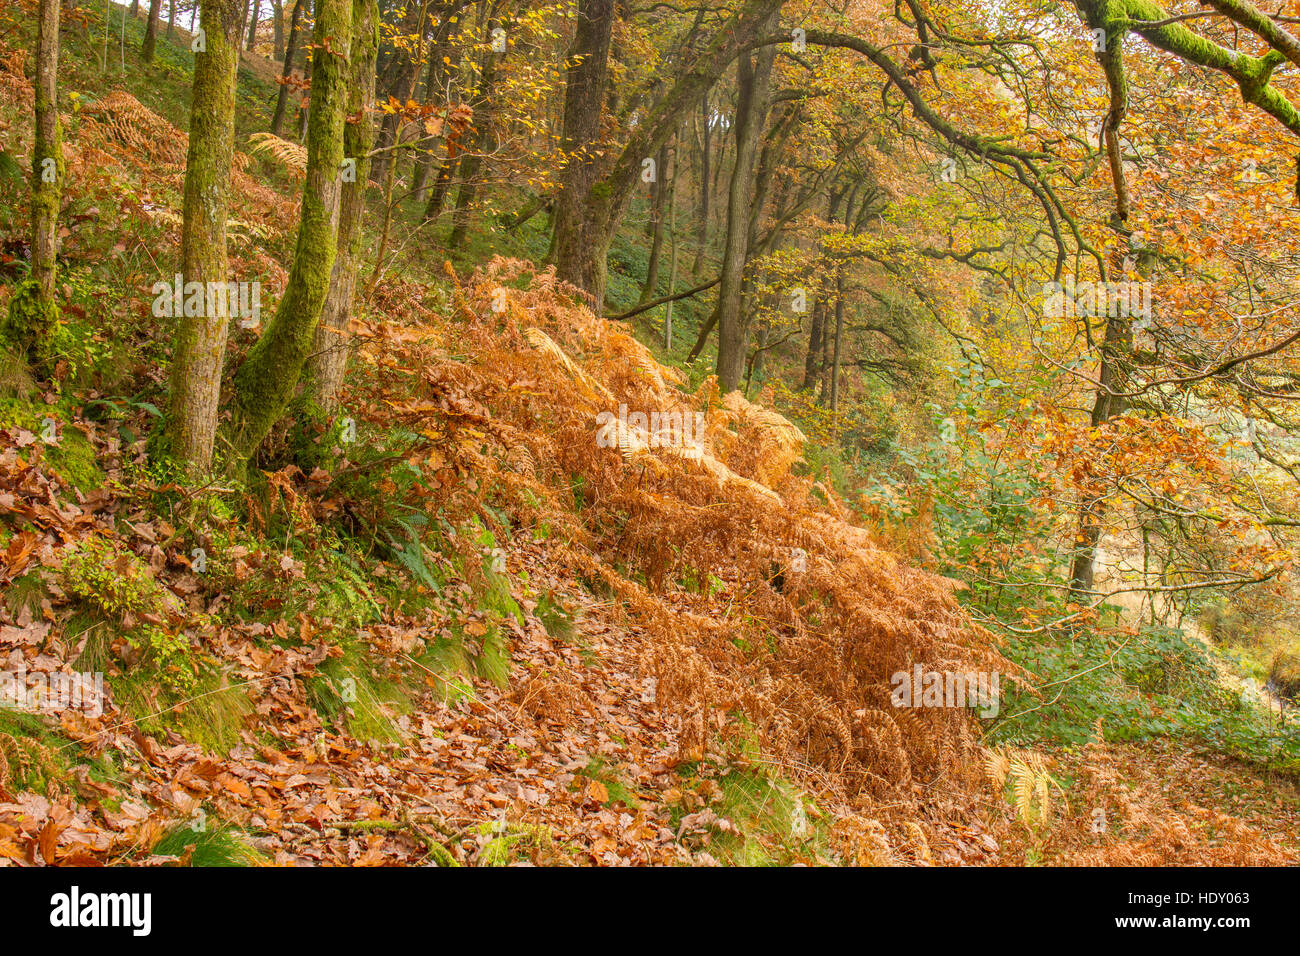 Vue de chêne sessile (Quercus petraea) en automne. Powys, Pays de Galles. Octobre. Banque D'Images